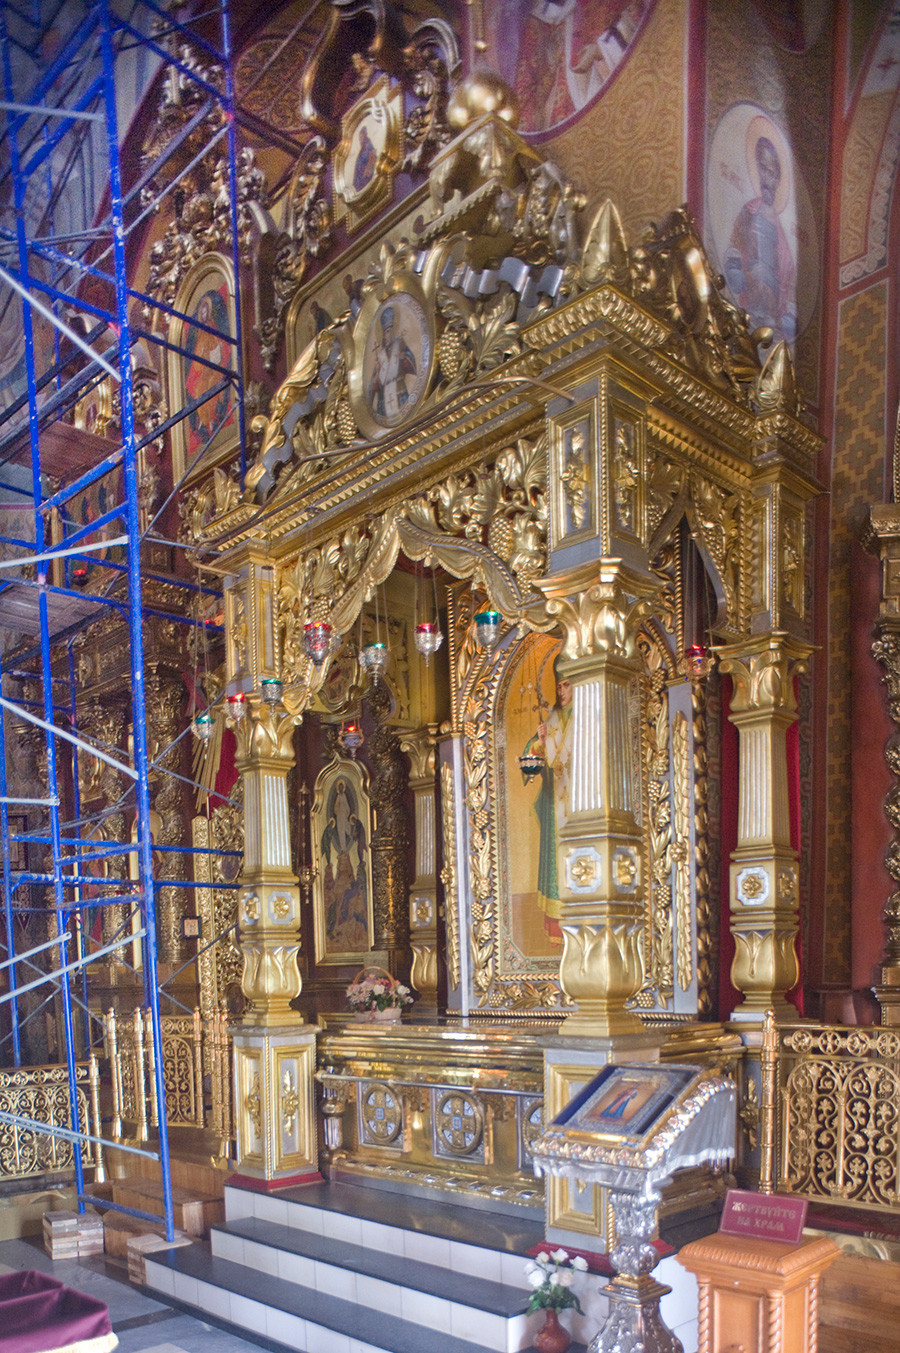 Katedrala Preobraženja, baldahin z relikvijami sv. Joasafa, belgorodskega škofa (relikvije prenesene iz muzeja leta 1991). 24. junij 2015
